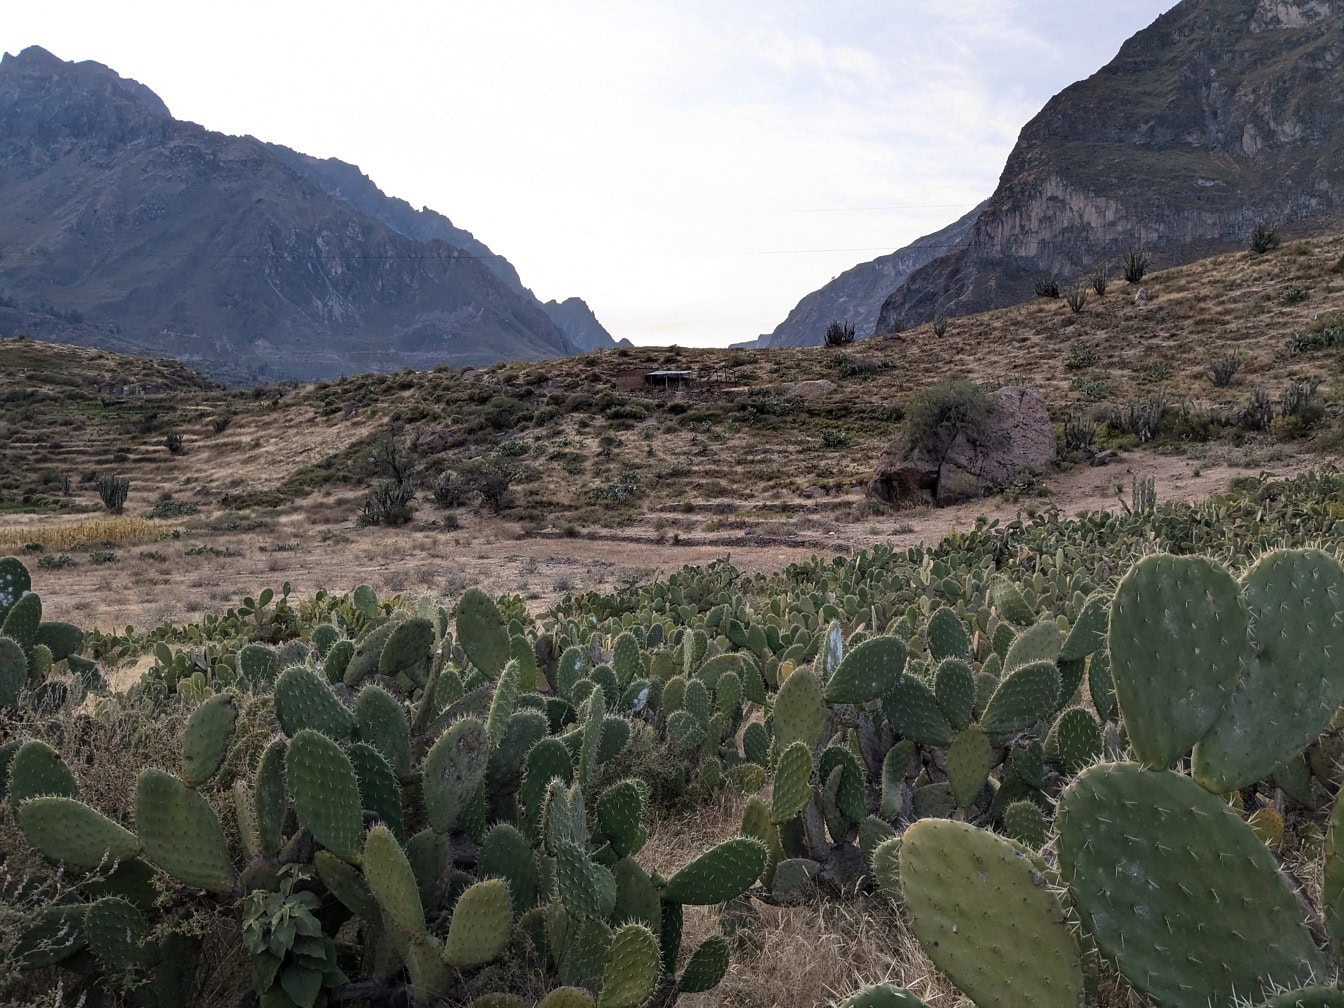 Krajobraz peruwiańskiej przyrody z kaktusami na pierwszym planie i górami w tle